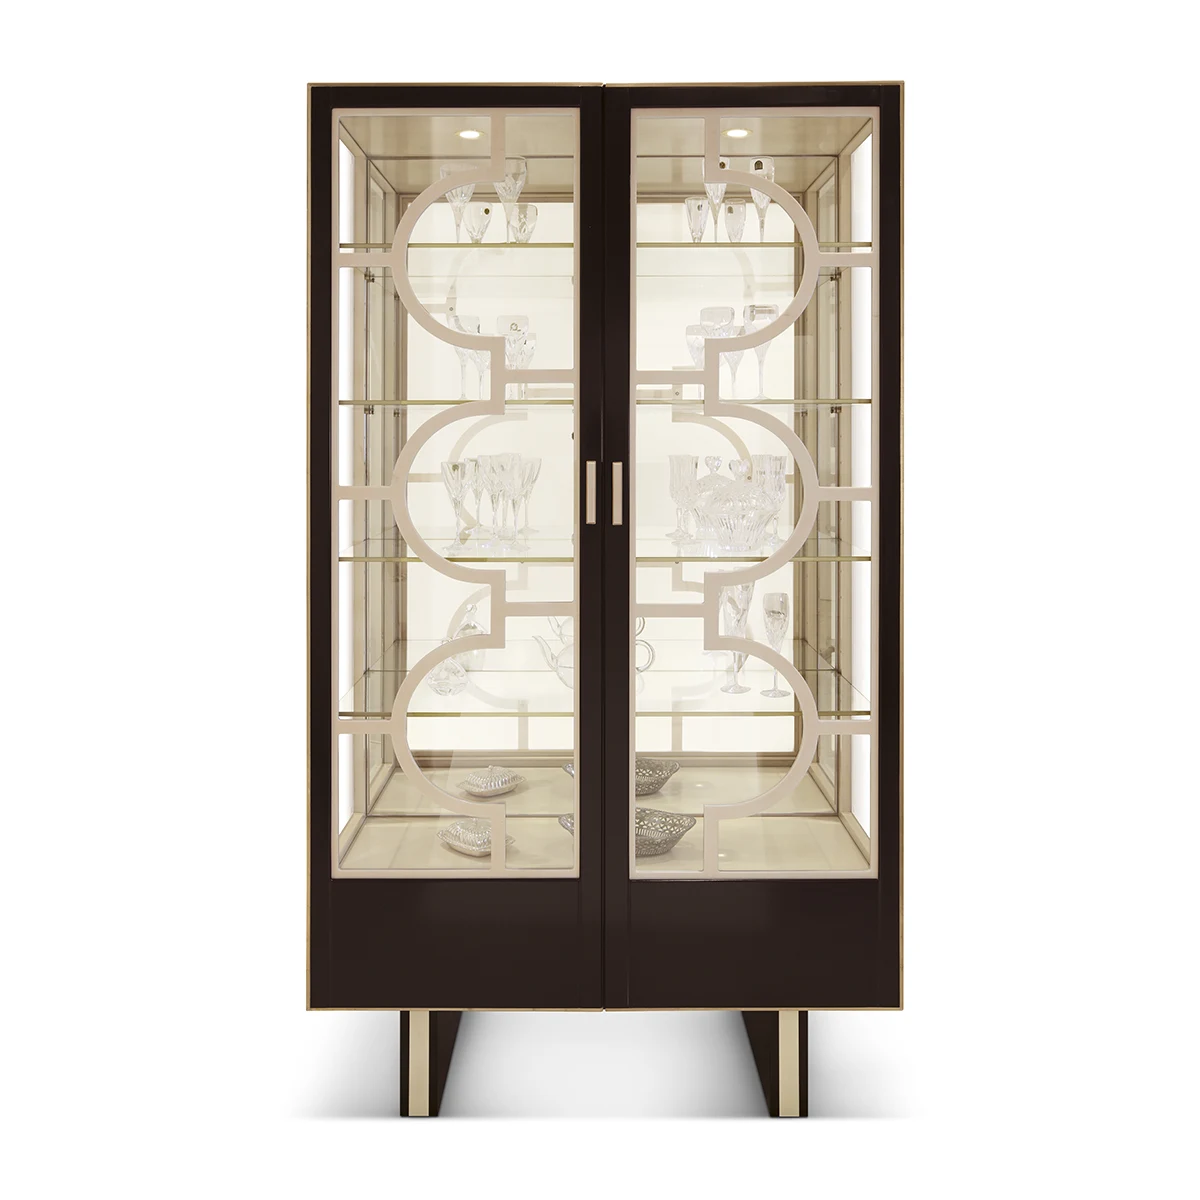 Fuji display cabinet 2 doors w/ pedestals